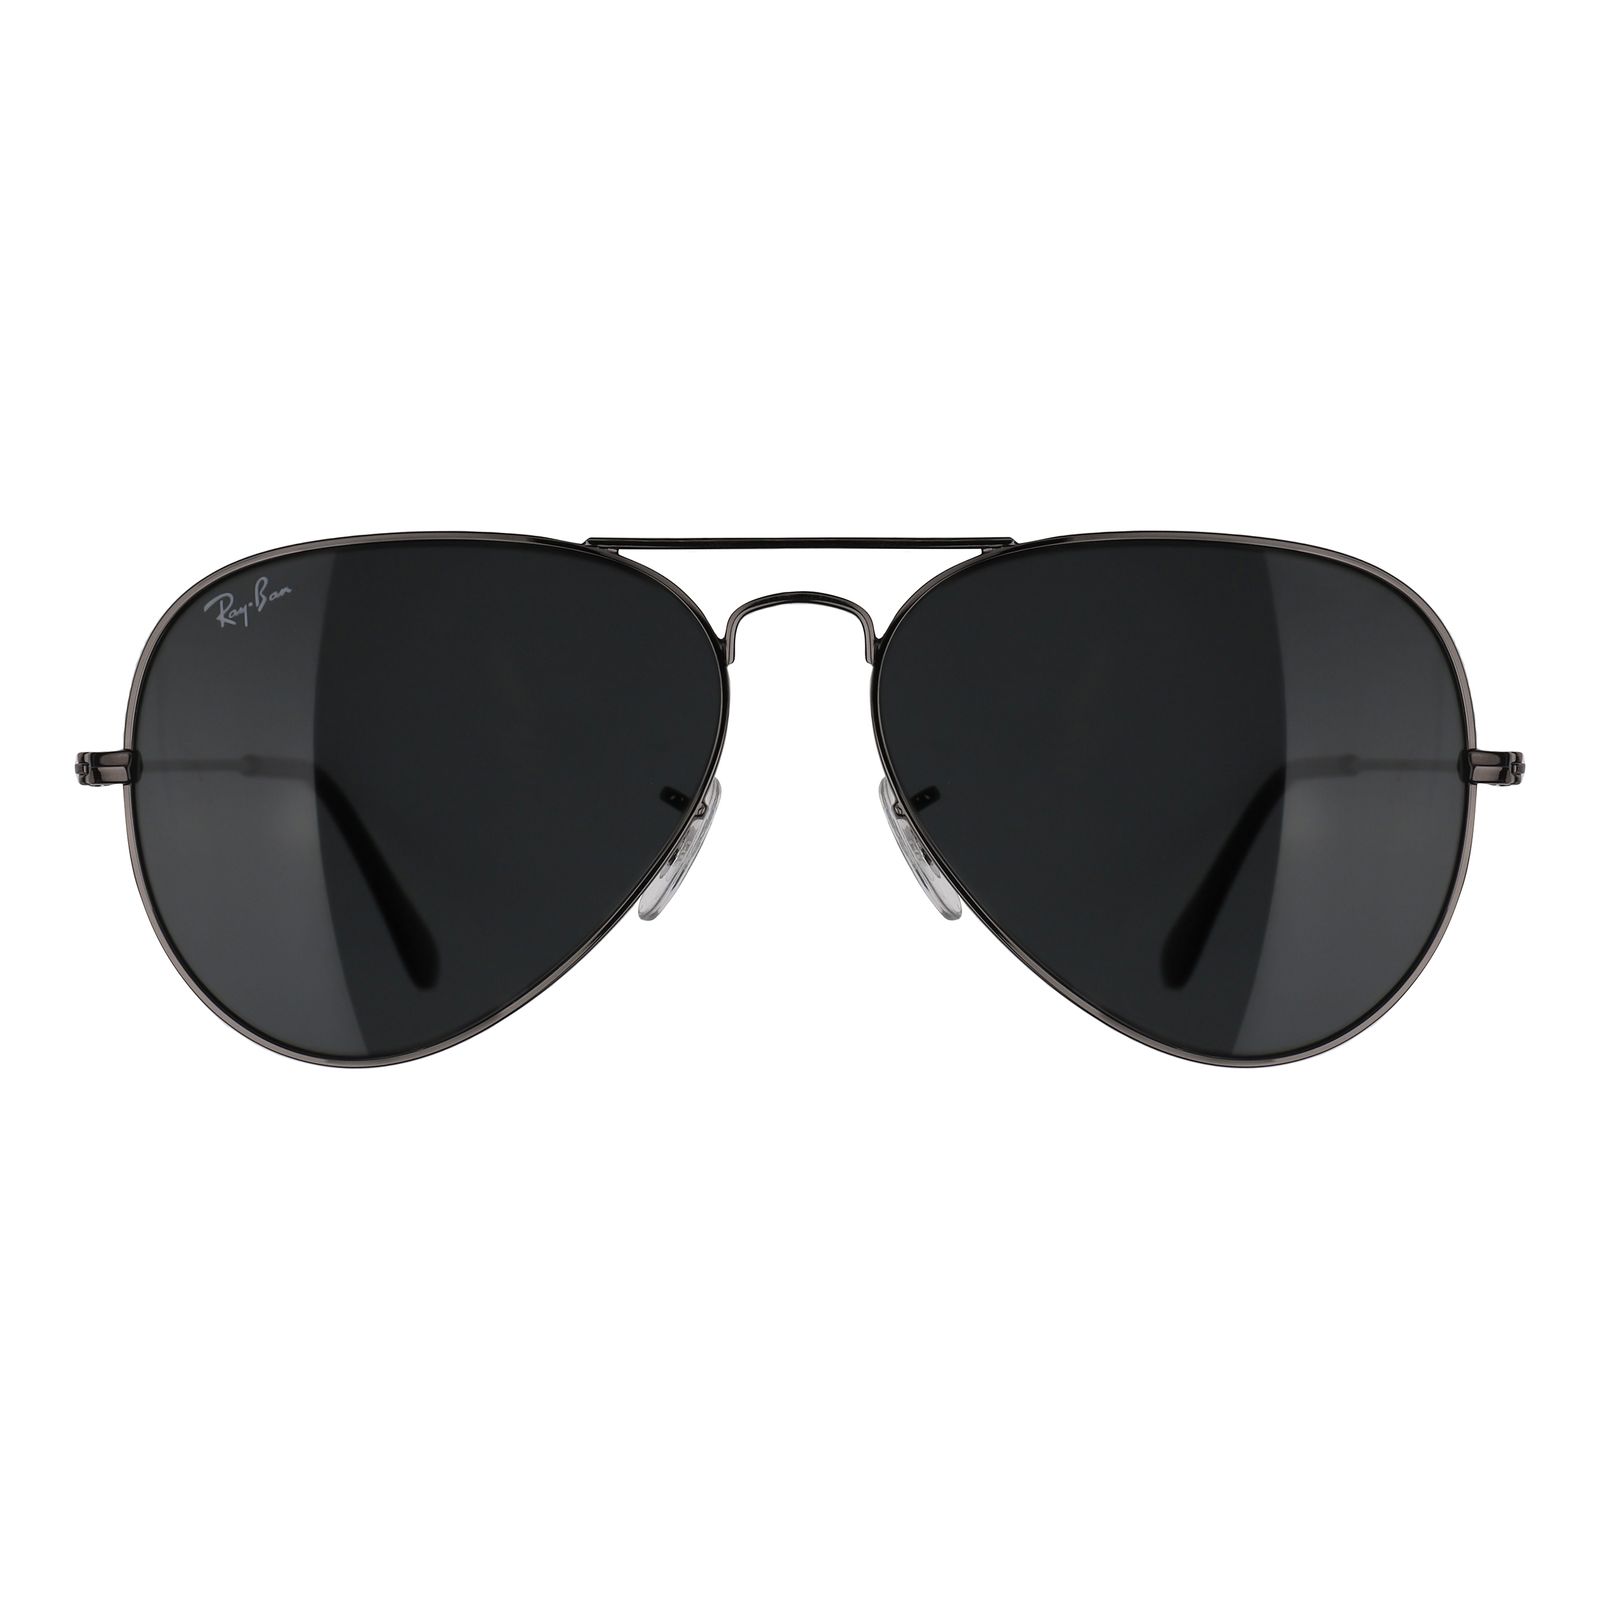 عینک آفتابی ری بن مدل RB3025-004/62 -  - 1